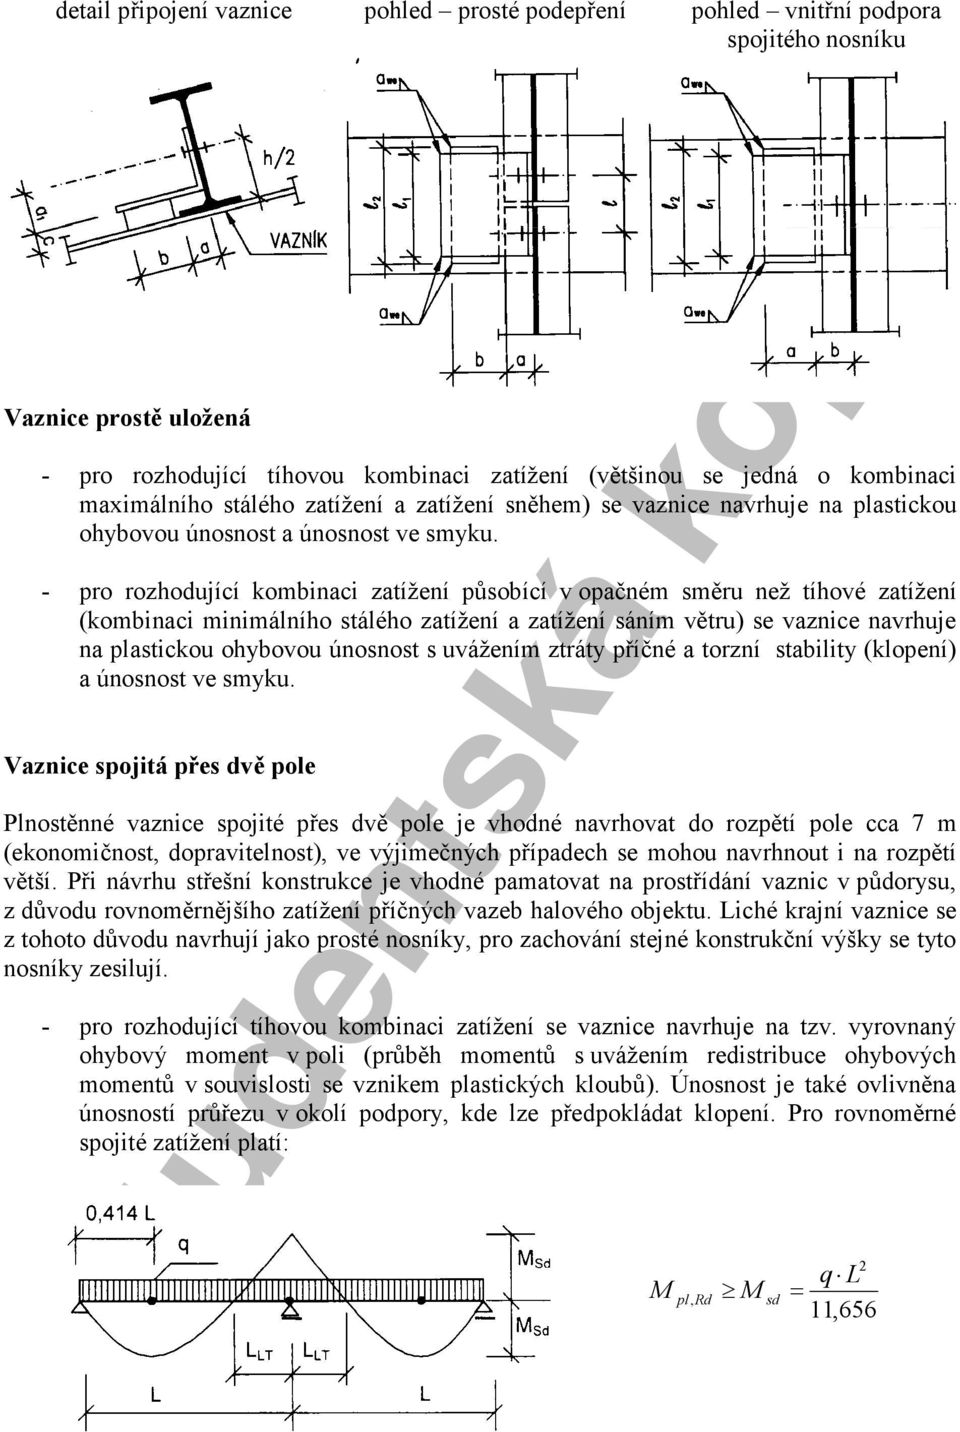 studentská kopie 3. Vaznice - tenkostěnná 3.1 Vnitřní (mezilehlá) vaznice -  PDF Stažení zdarma